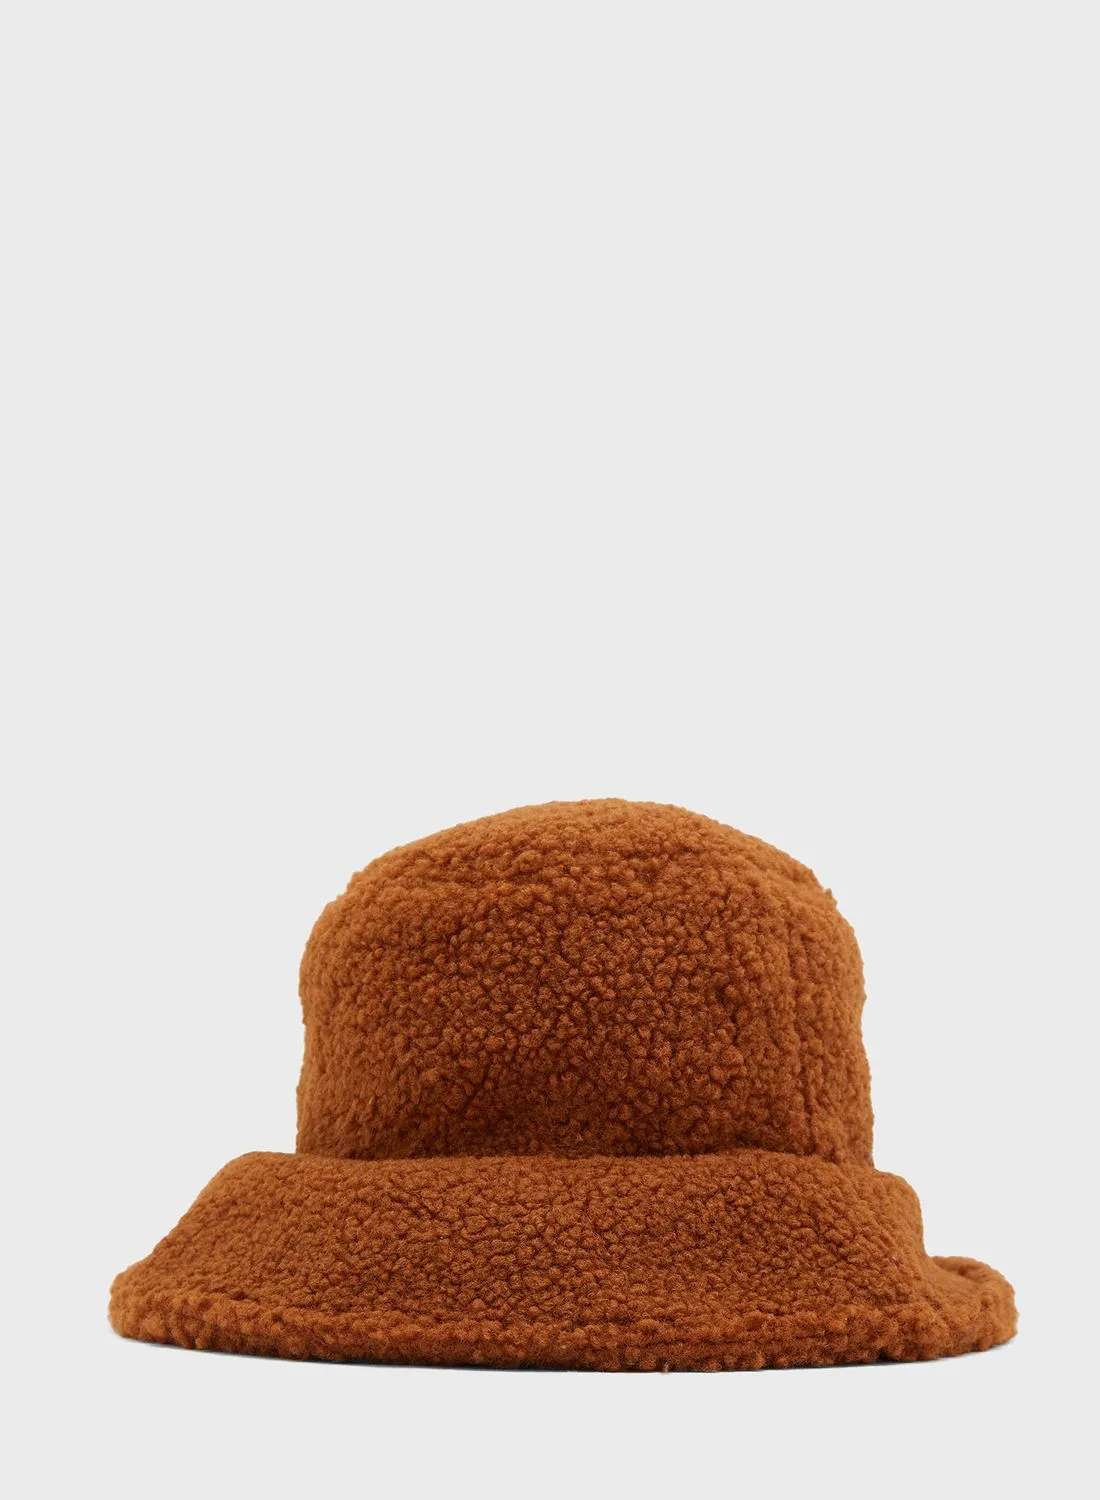 قبعة دلو من روبي بيانكا